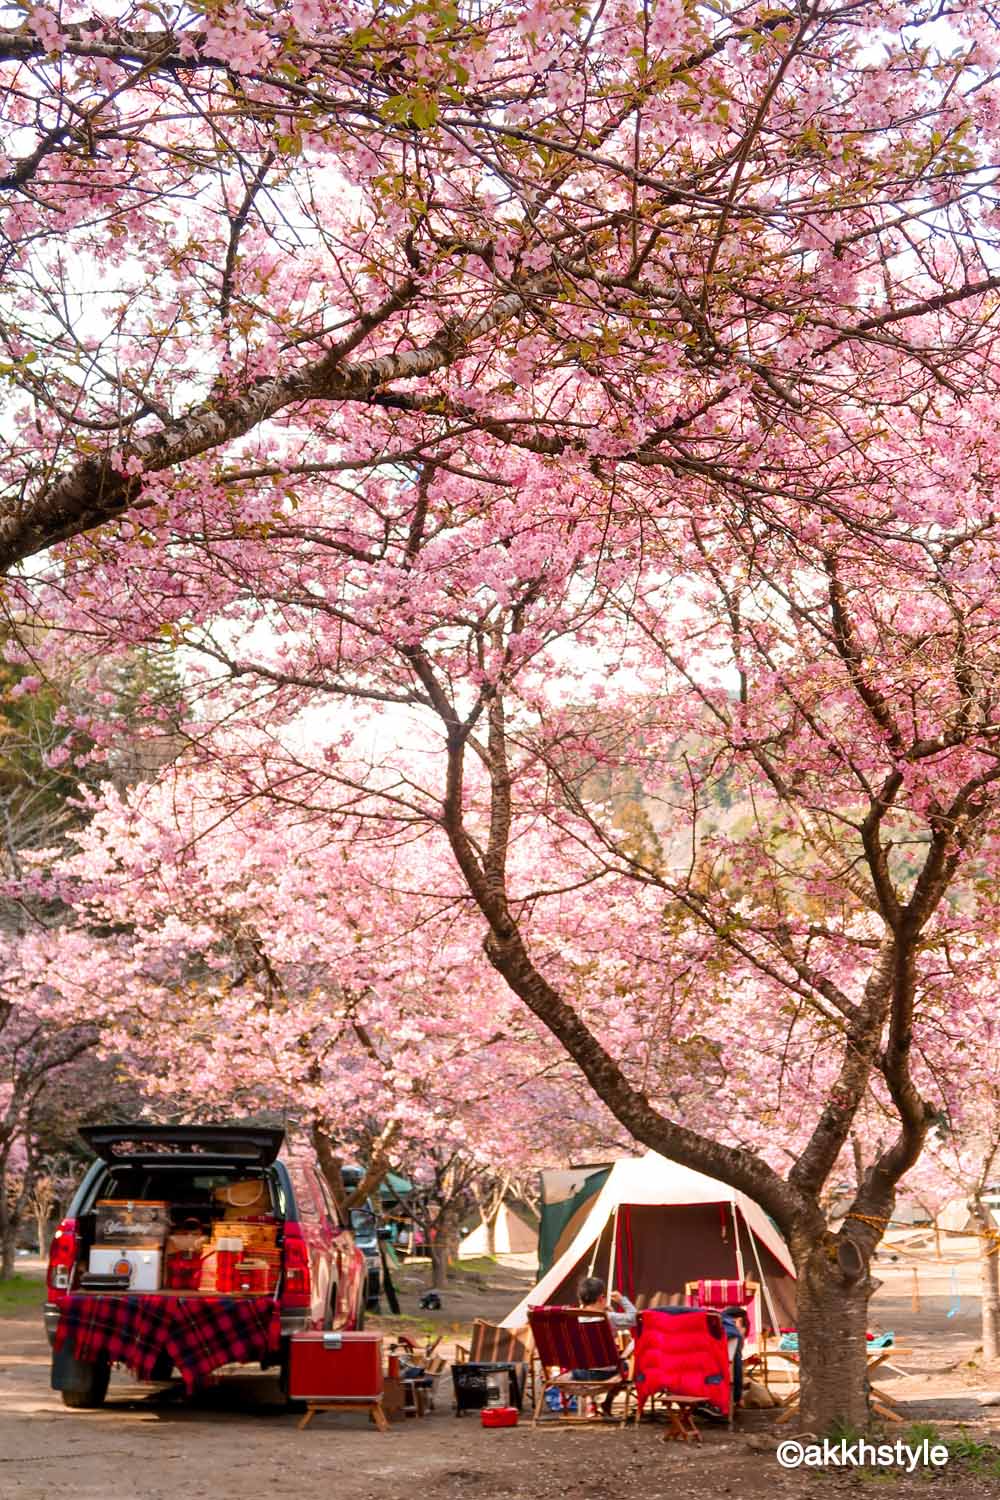 予約はもちろんだが、桜の木の下の場所取りは大変。空いてた頃が懐しい。